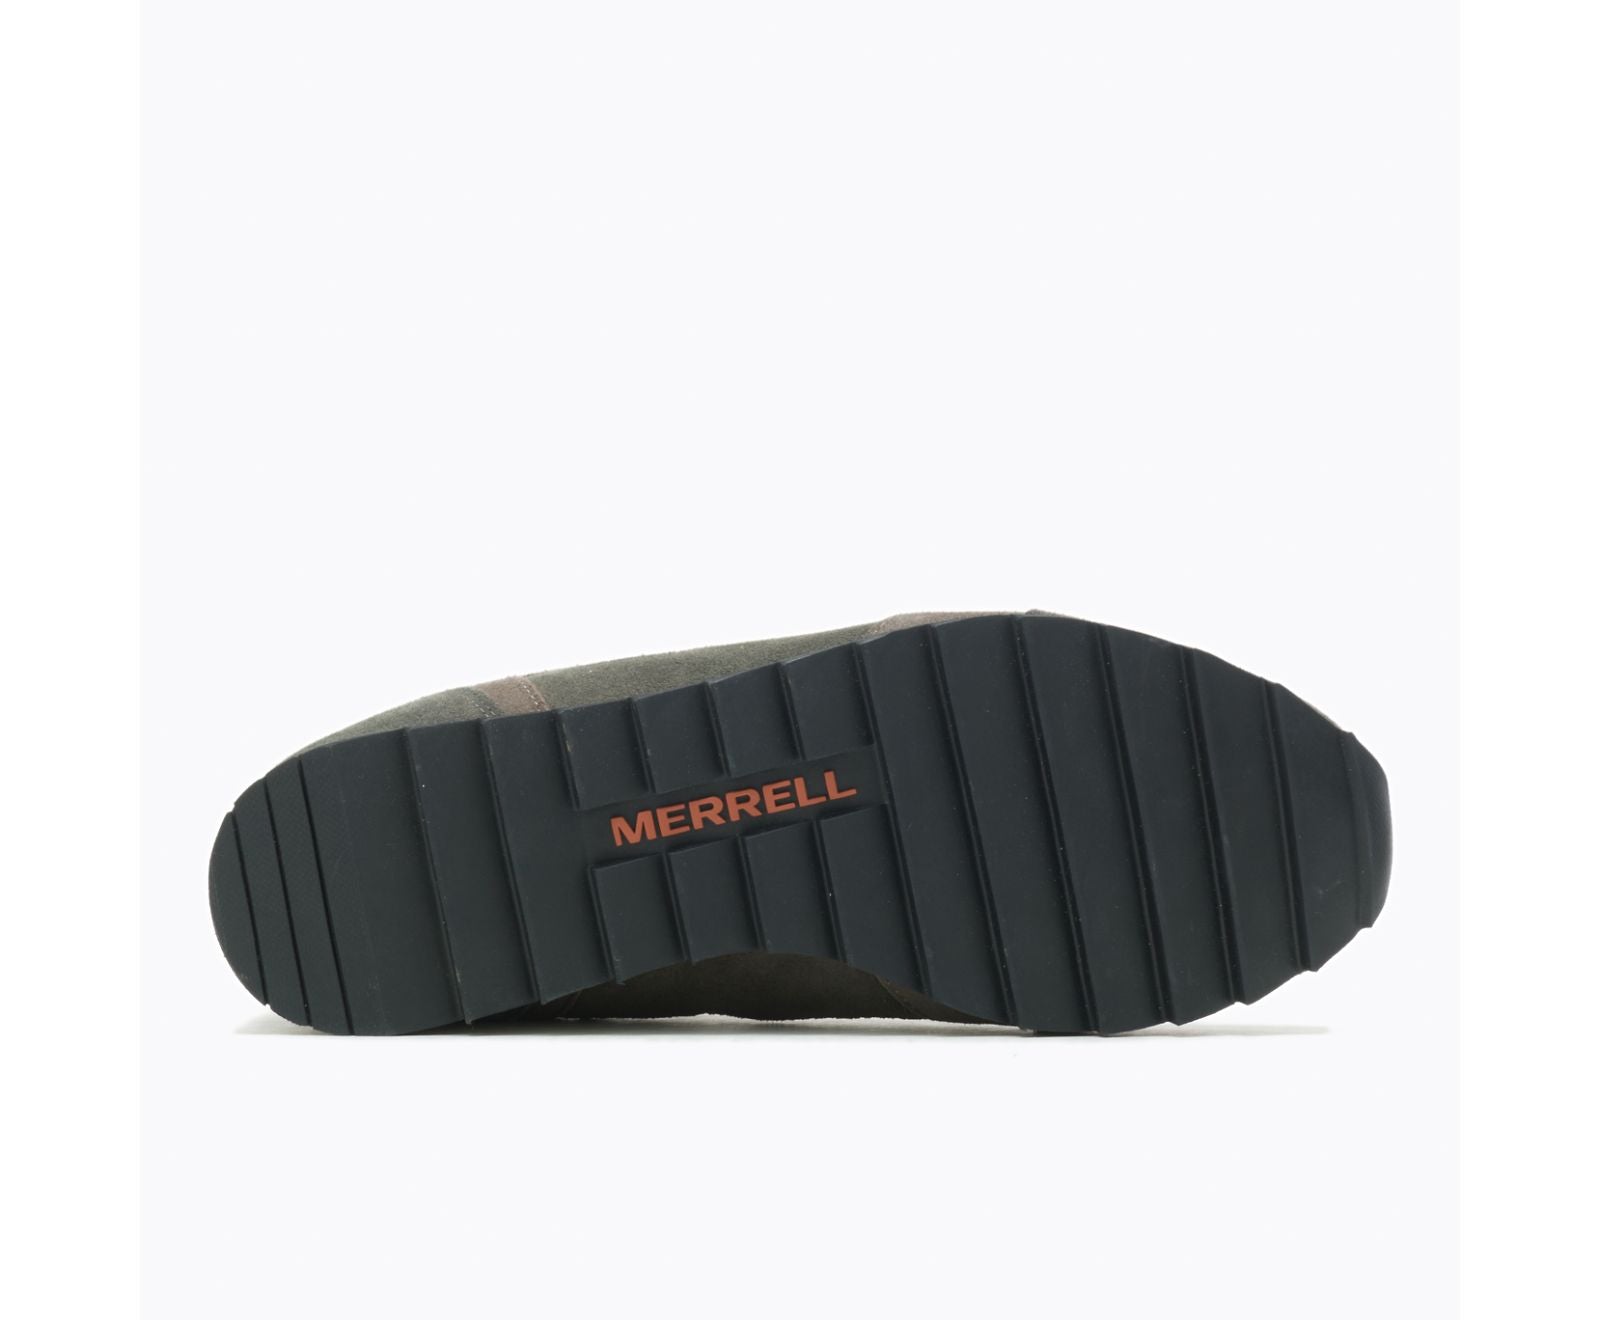 Merrell Alpine Sneaker Men's